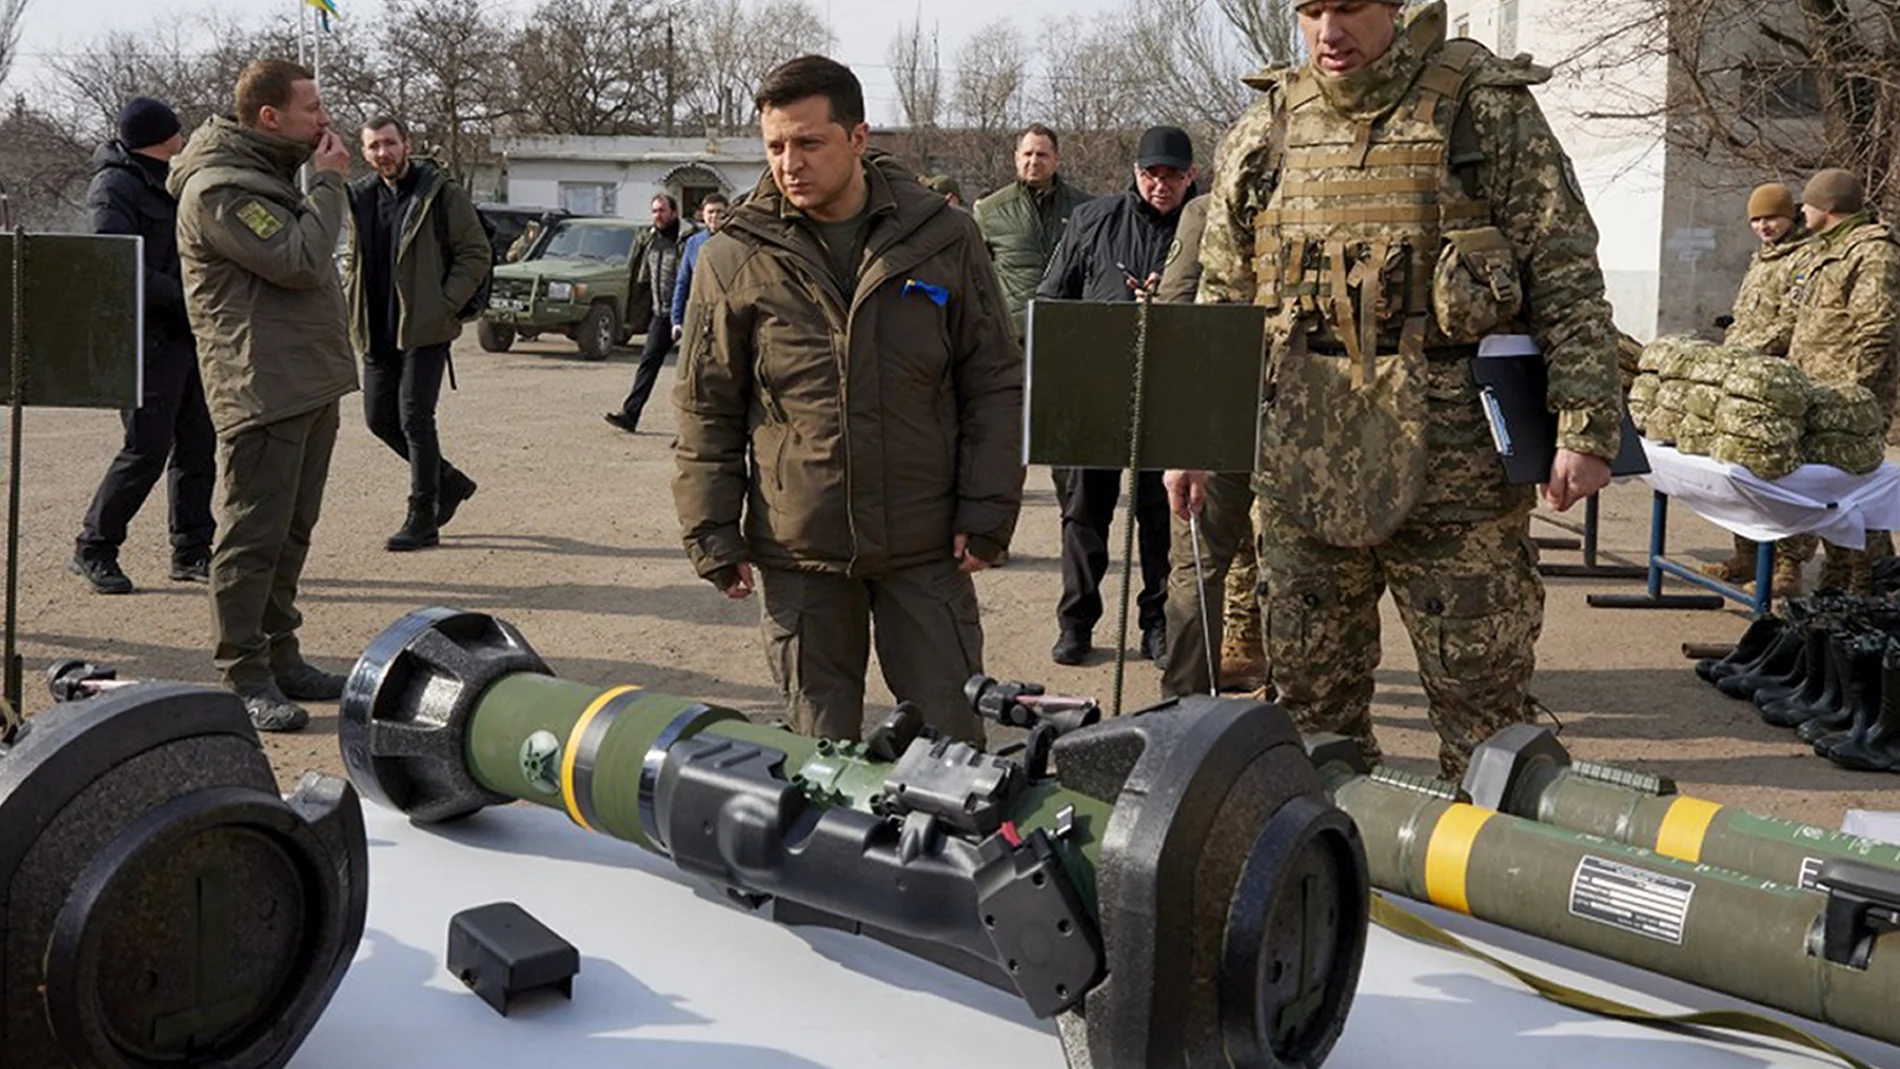 El presidente ucraniano Volodymyr Zelenskyy inspecciona armamento durante una visita a Mariupol, en la región separatista de Donetsk